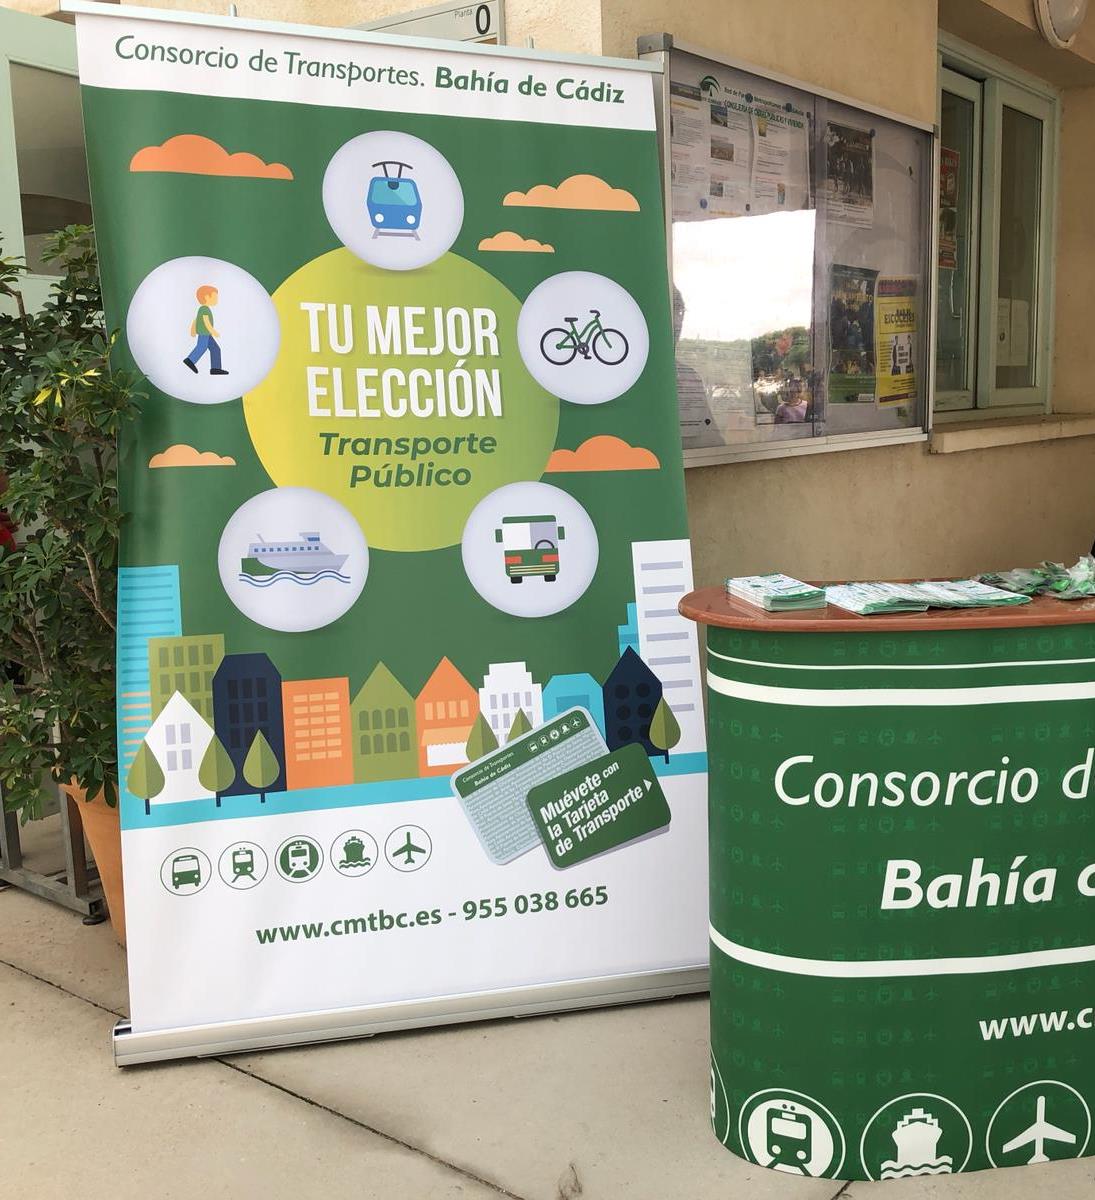 El Consorcio de Transportes de la bahía de Cádiz organiza diversas actividades, con motivo de la celebración de la Semana Europea de la Movilidad 2018